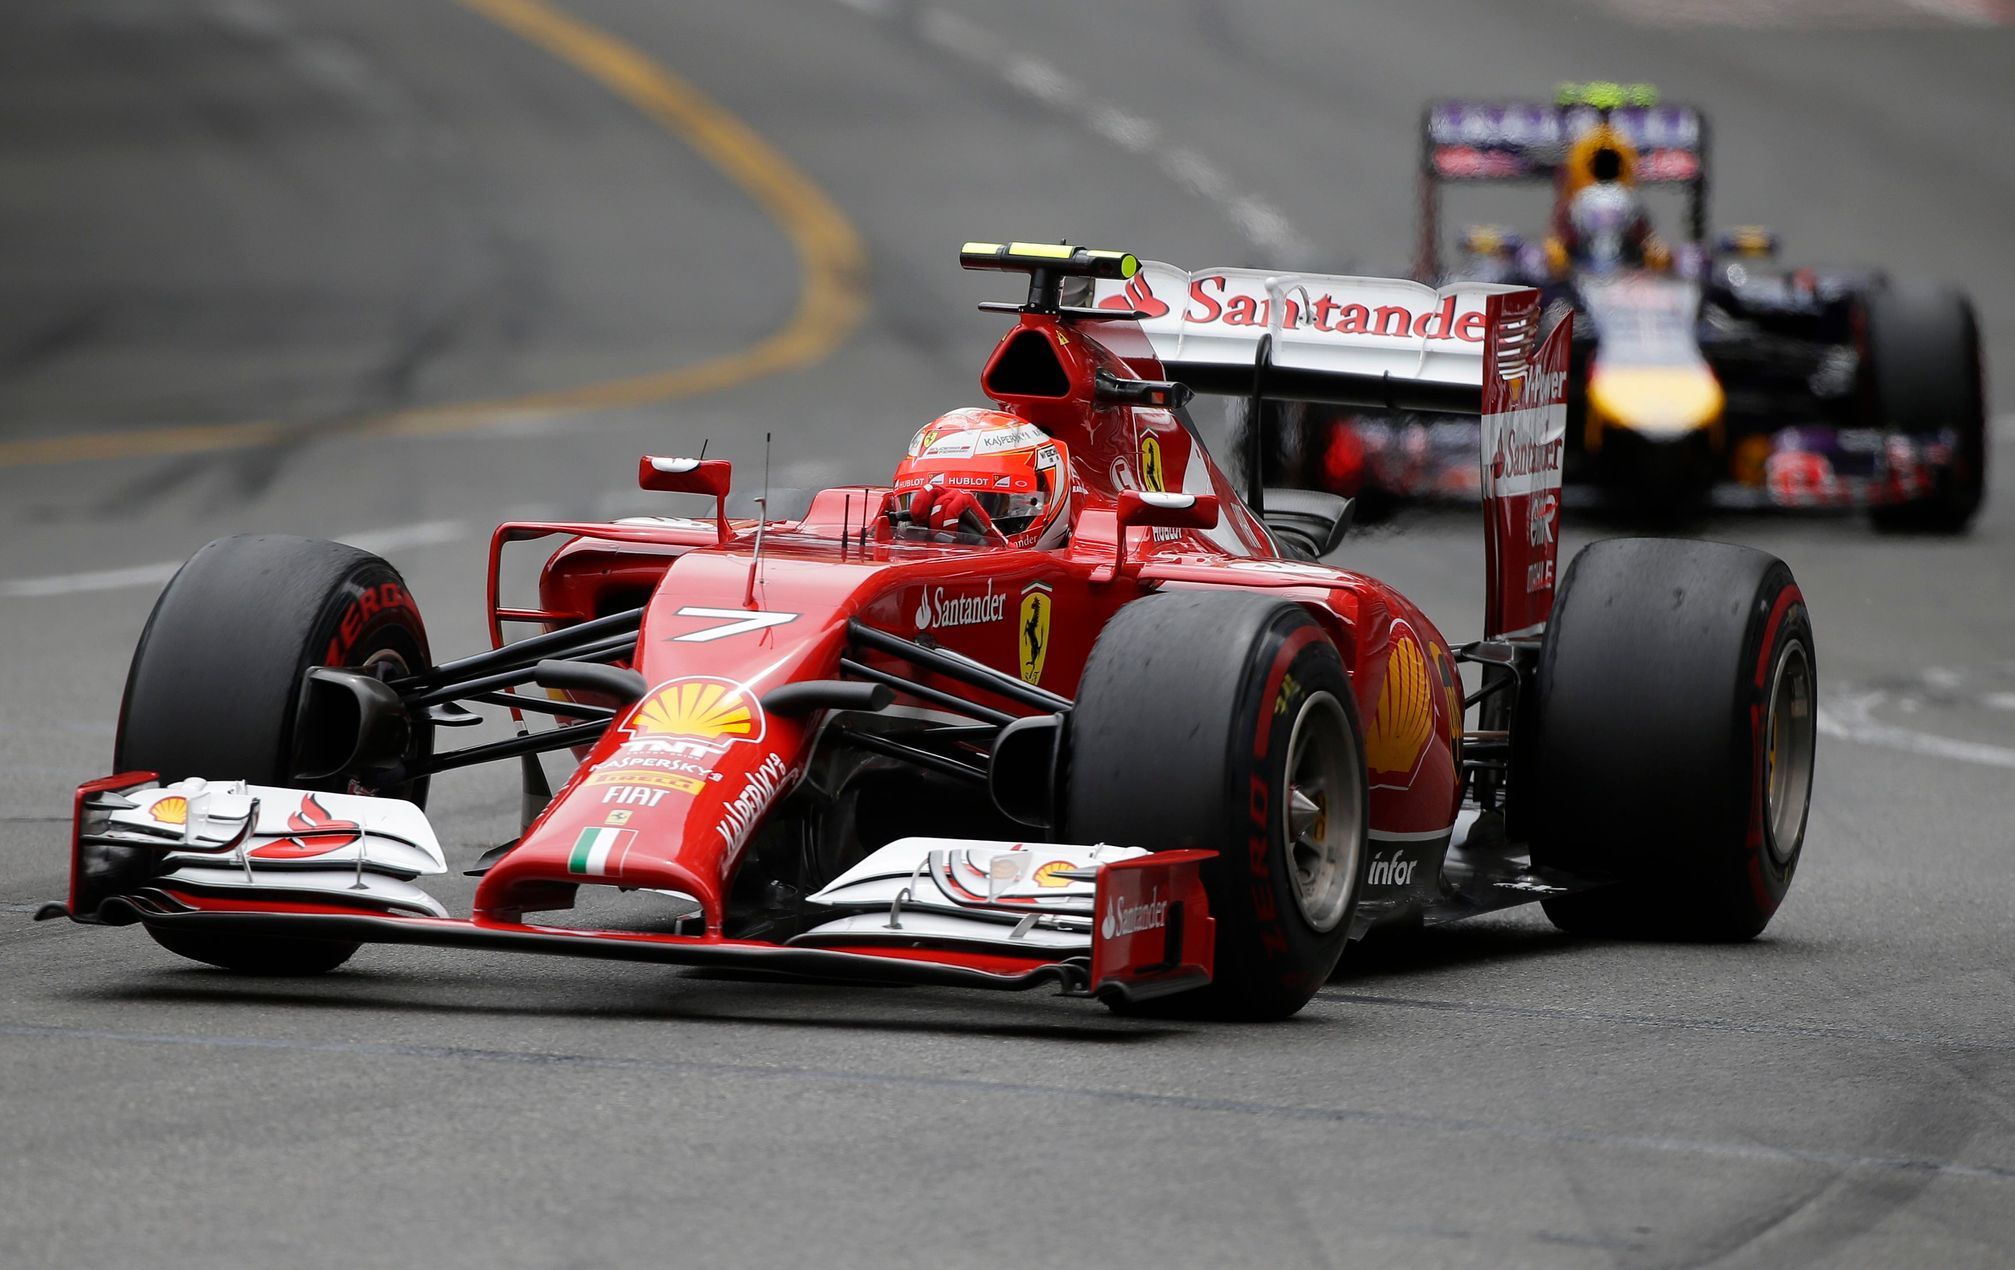 Ferrari Formula One driver Raikkonen of Finland leads Red Bull Ricciardo of Australia during the Monaco Grand Prix in Monaco